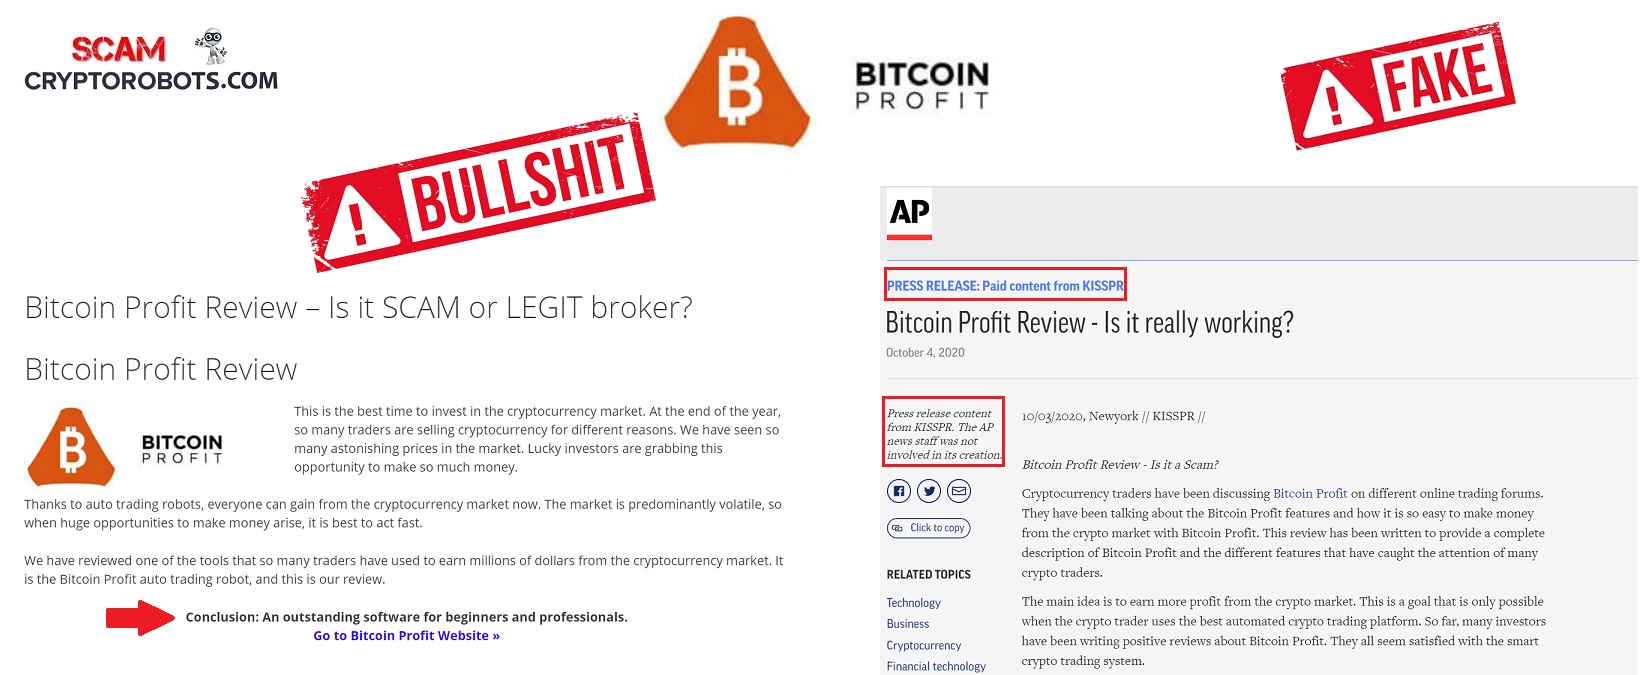 profitul bitcoin fraude)